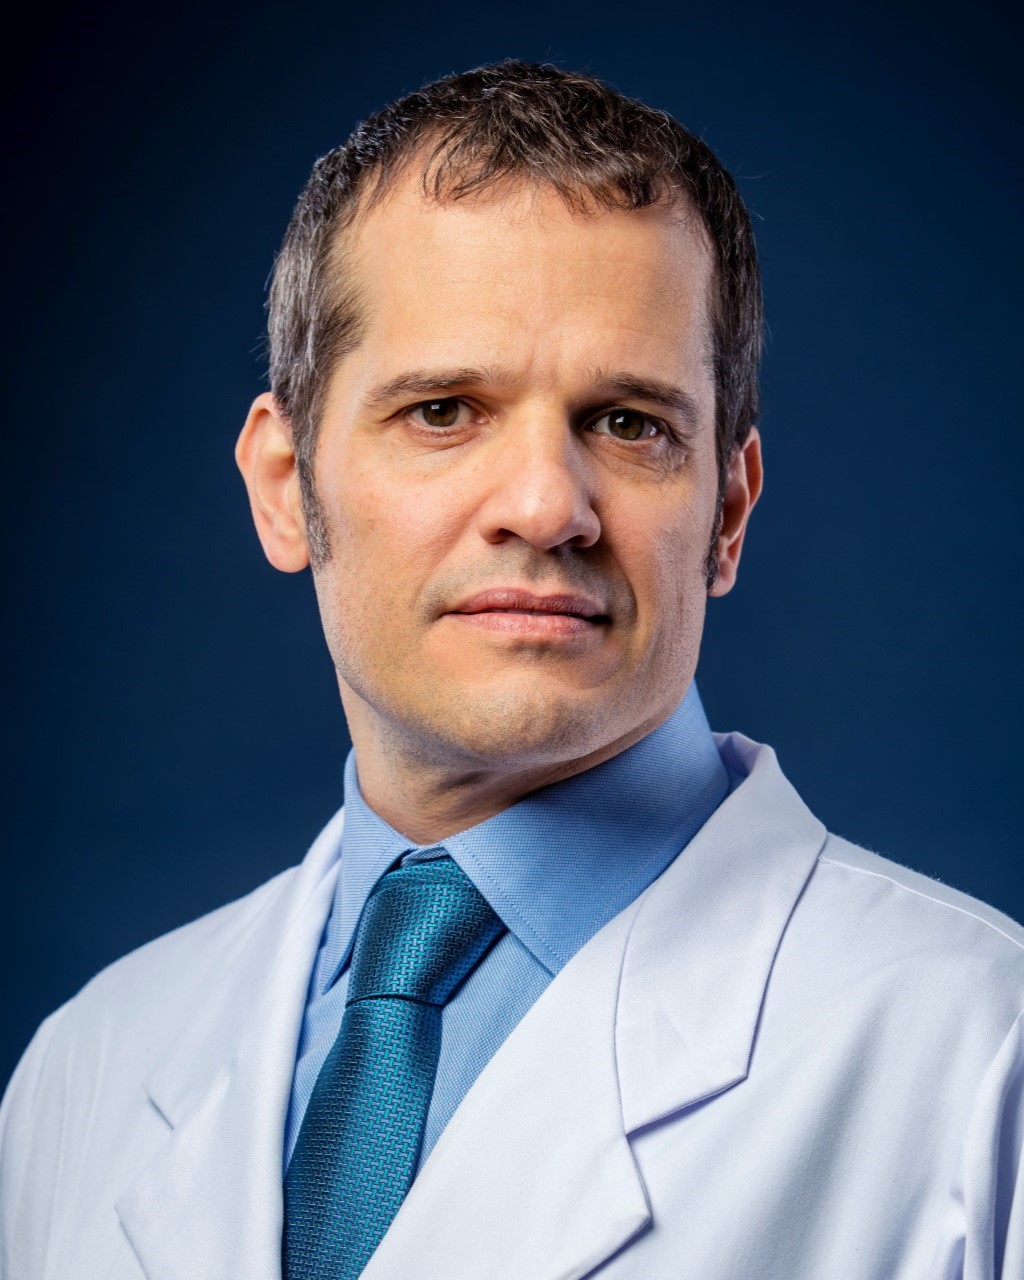 Paulo Campregher, MD, PhD